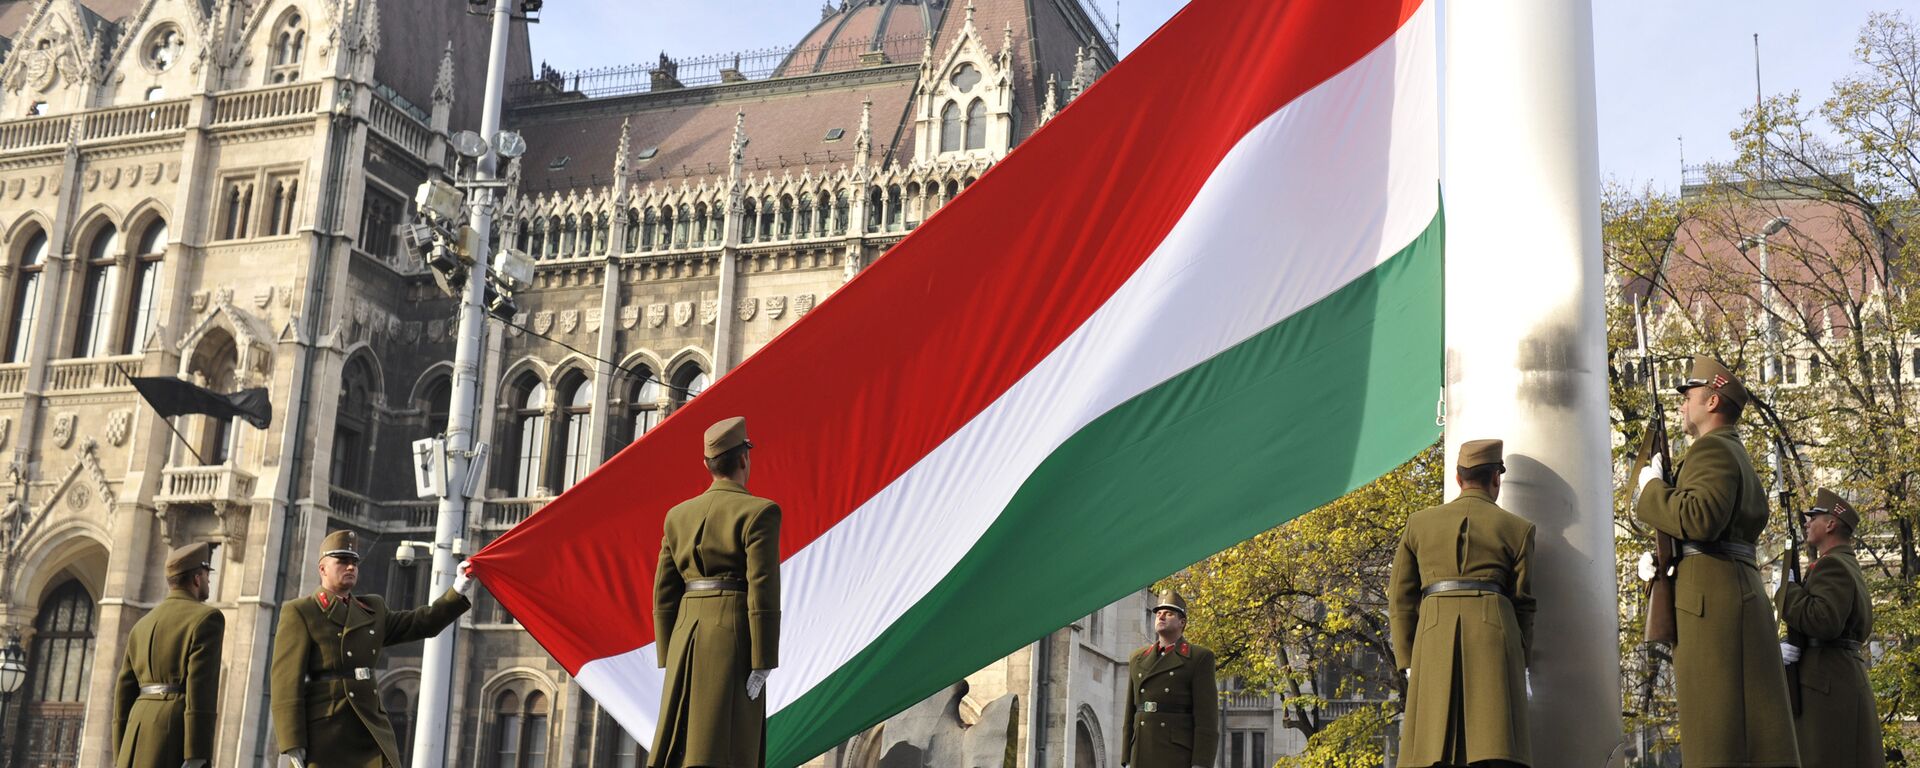 Поднятие национального флага Венгрии в Будапеште - Sputnik Латвия, 1920, 28.03.2018